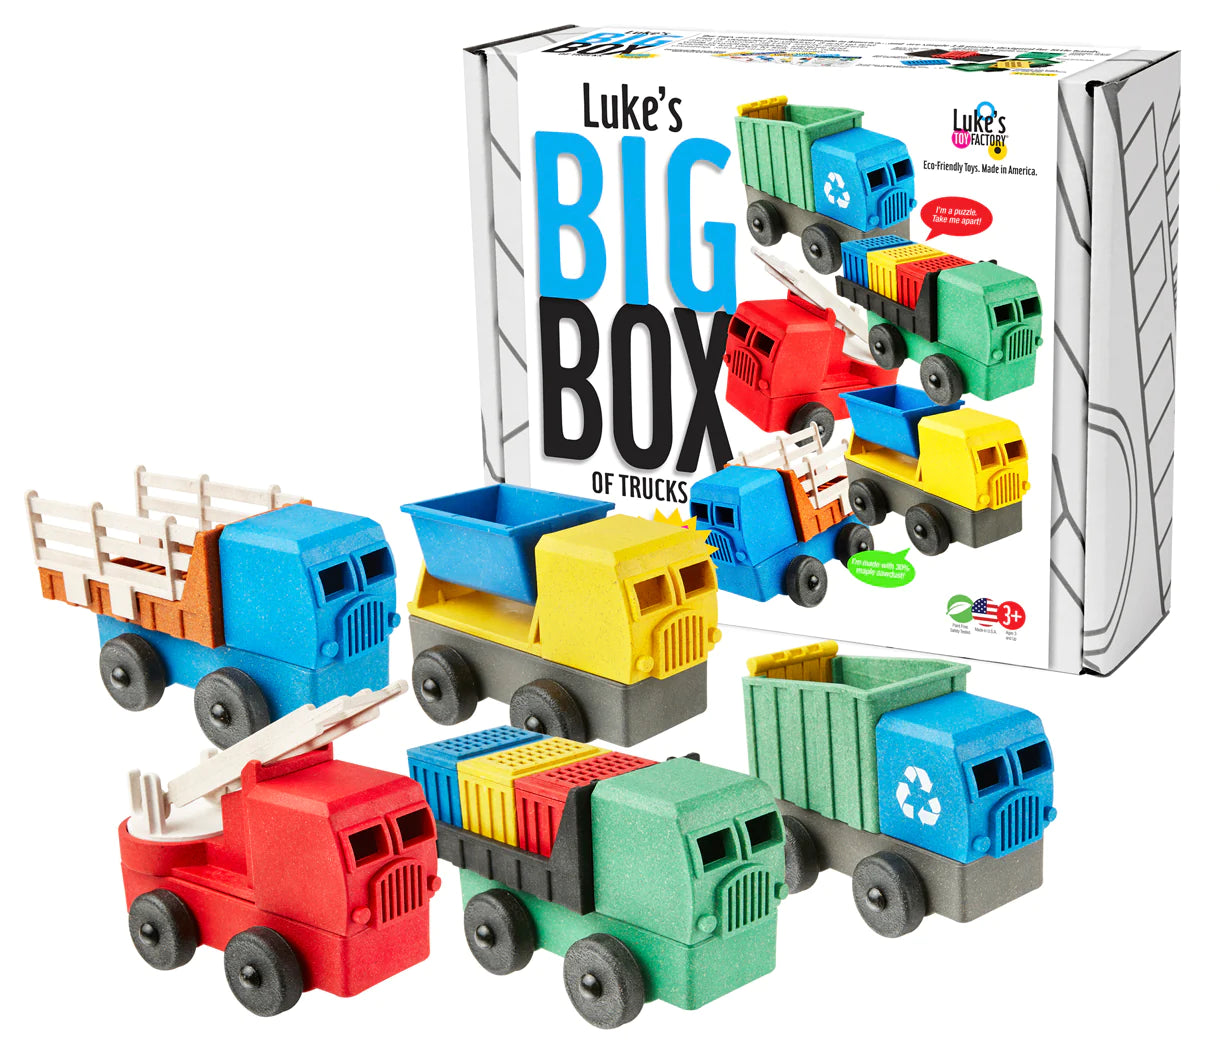 Luke's Big Box of Trucks